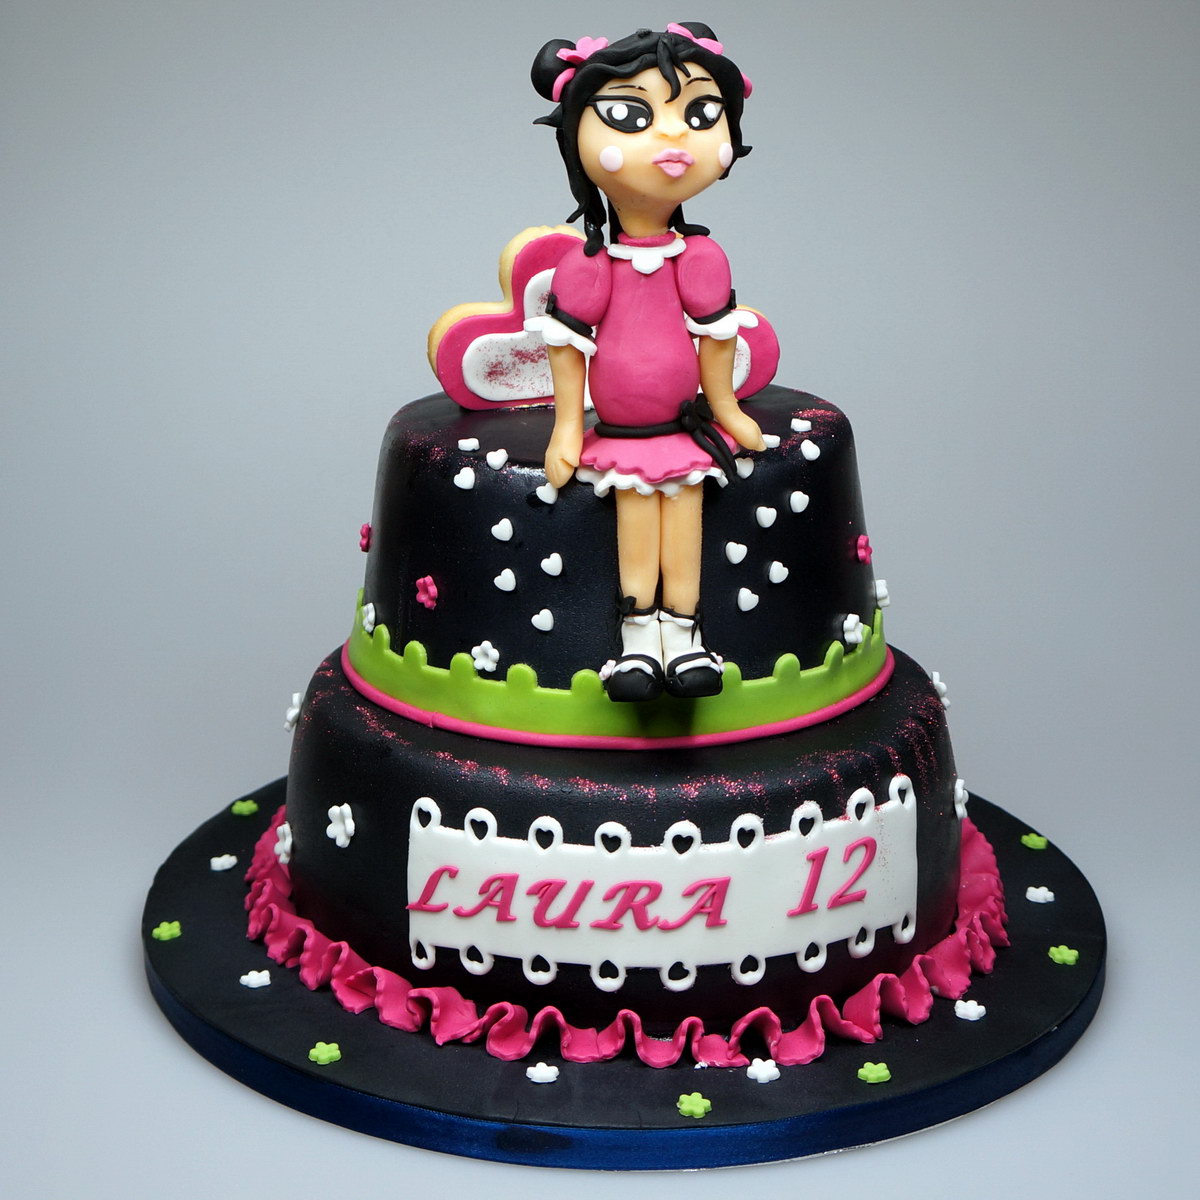 31 Unique Kids Birthday Cake Designs | Cake Design And Decorating ...